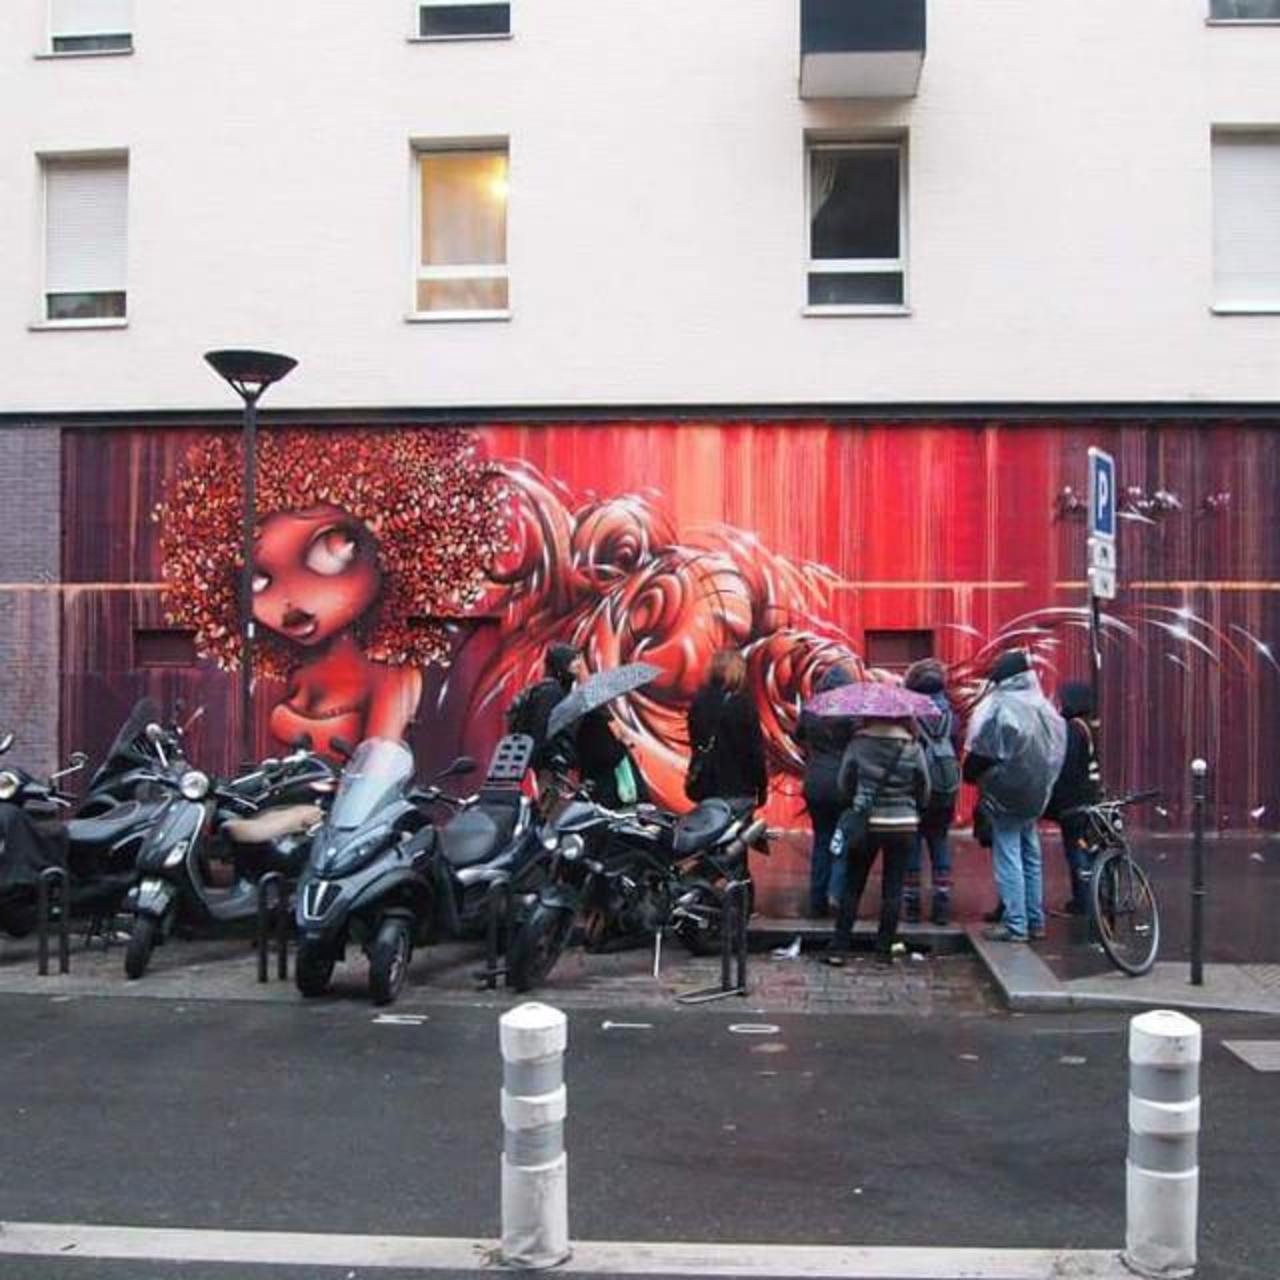 RT @circumjacent_fr: #Paris #graffiti photo by @streetarttourparis http://ift.tt/1Mfq8fm #StreetArt http://t.co/PqrweqRCWd